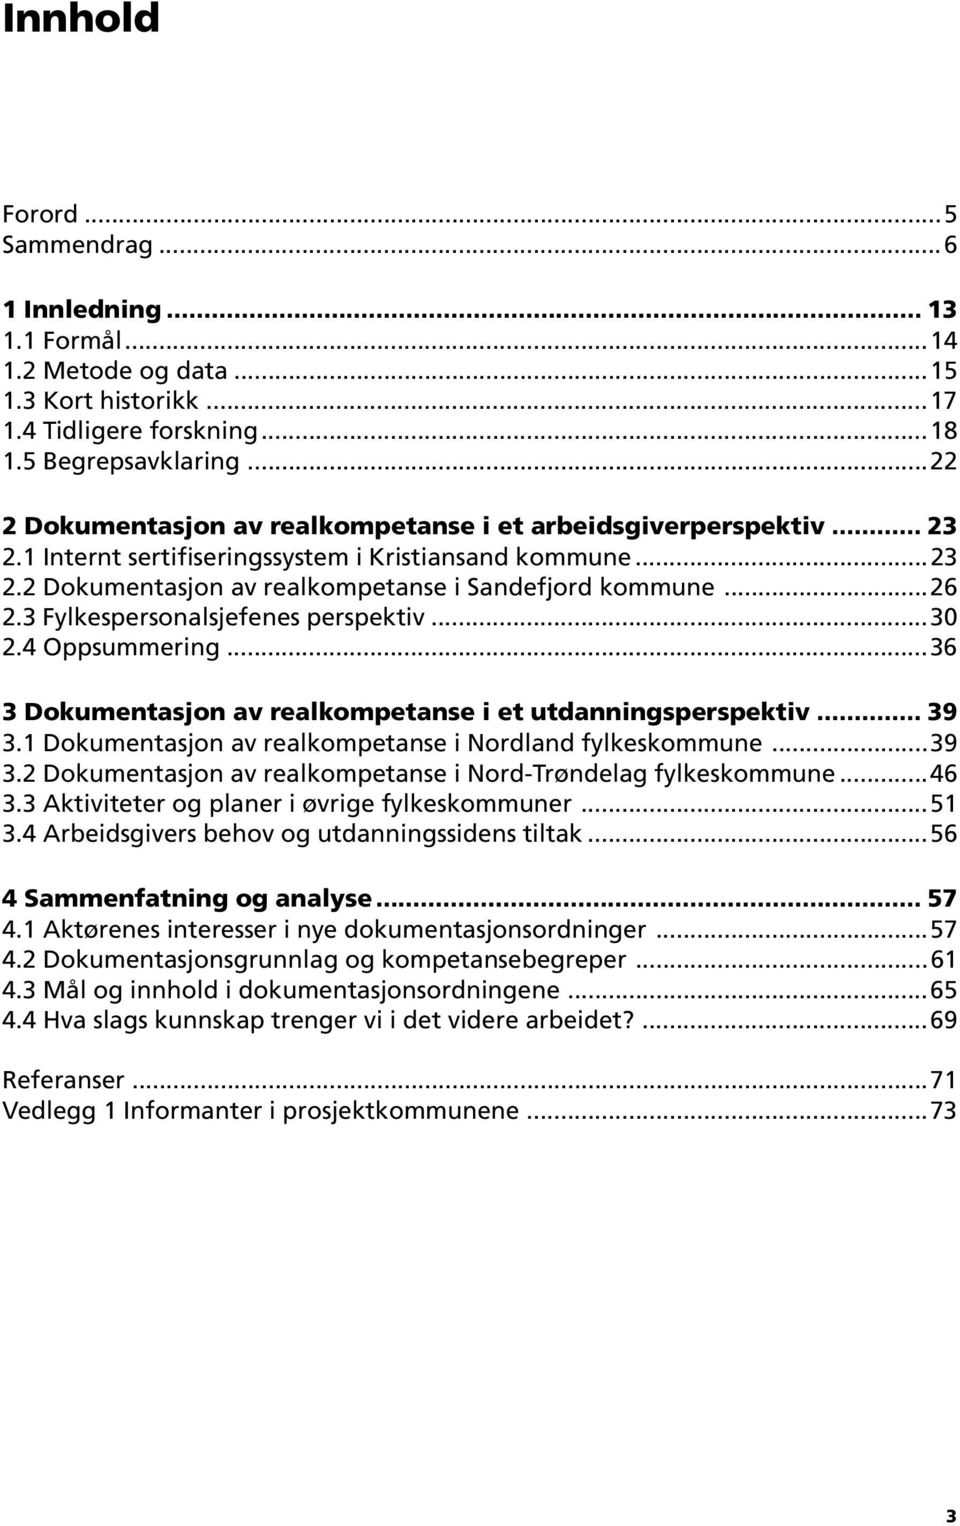 3 Fylkespersonalsjefenes perspektiv...30 2.4 Oppsummering...36 3 Dokumentasjon av realkompetanse i et utdanningsperspektiv... 39 3.1 Dokumentasjon av realkompetanse i Nordland fylkeskommune...39 3.2 Dokumentasjon av realkompetanse i Nord-Trøndelag fylkeskommune.